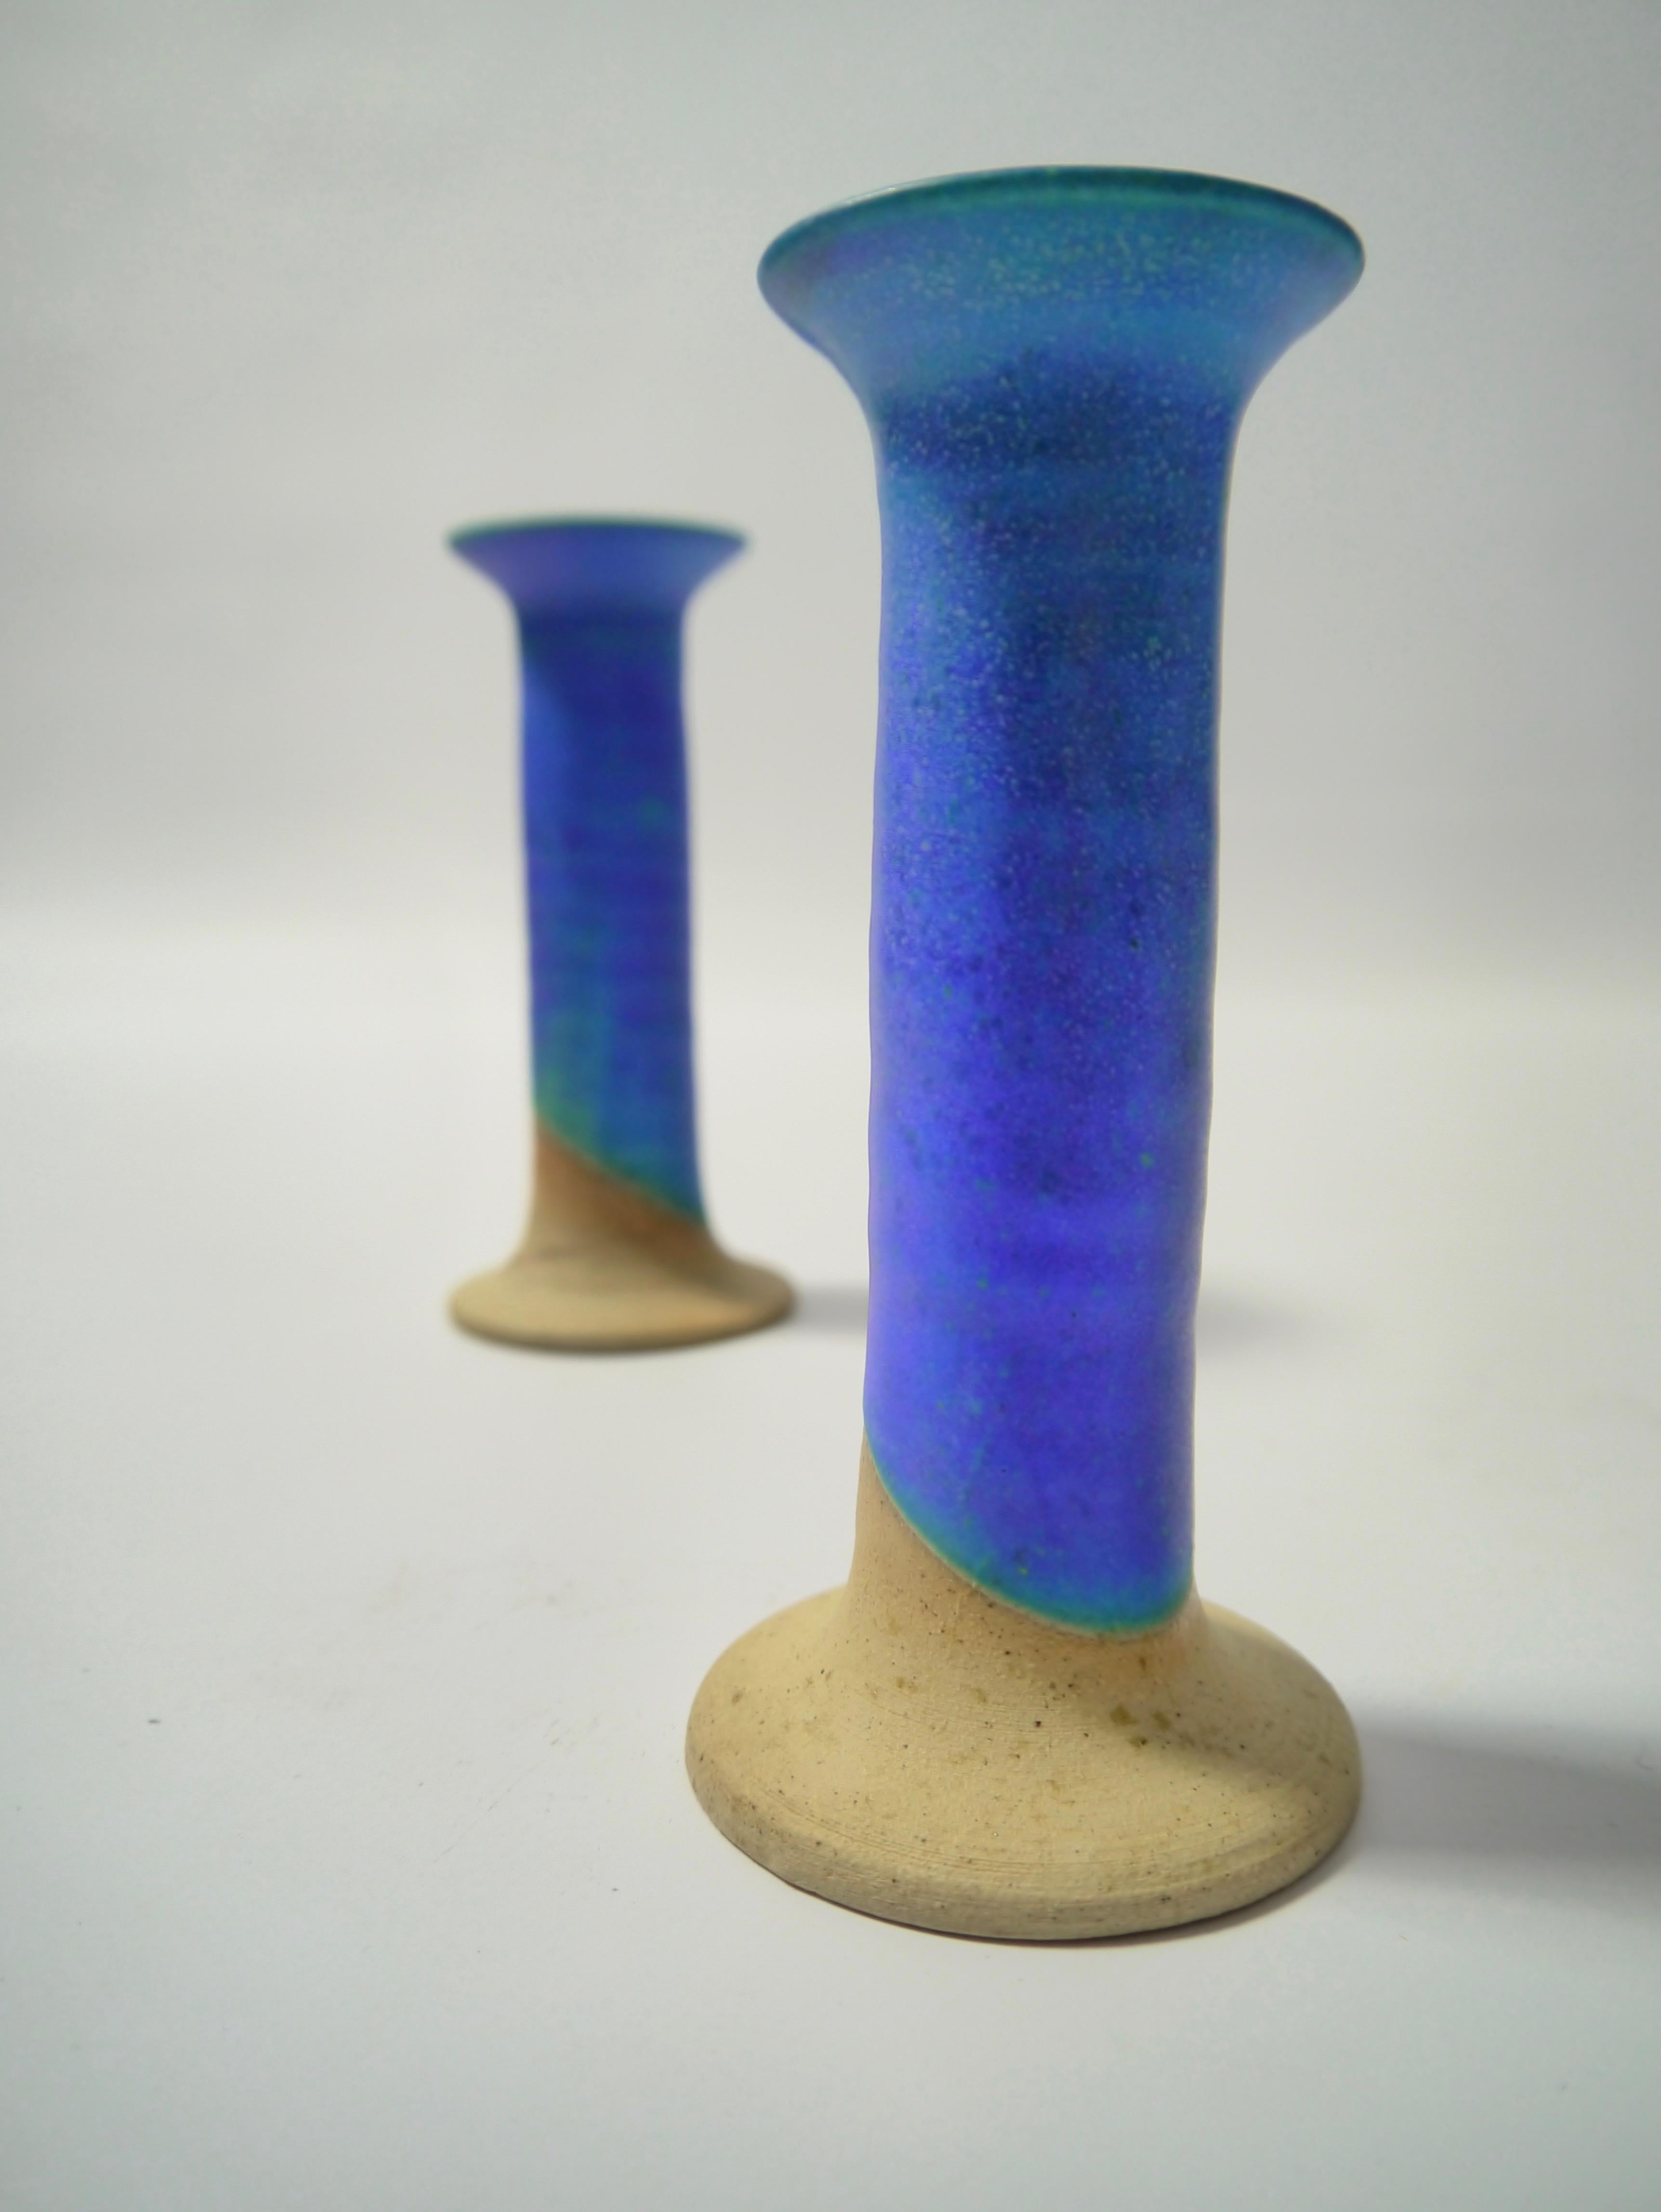 Glazed Pair of Azure Blue Ceramic Candlesticks by Inger Krebs, Denmark, 1980s